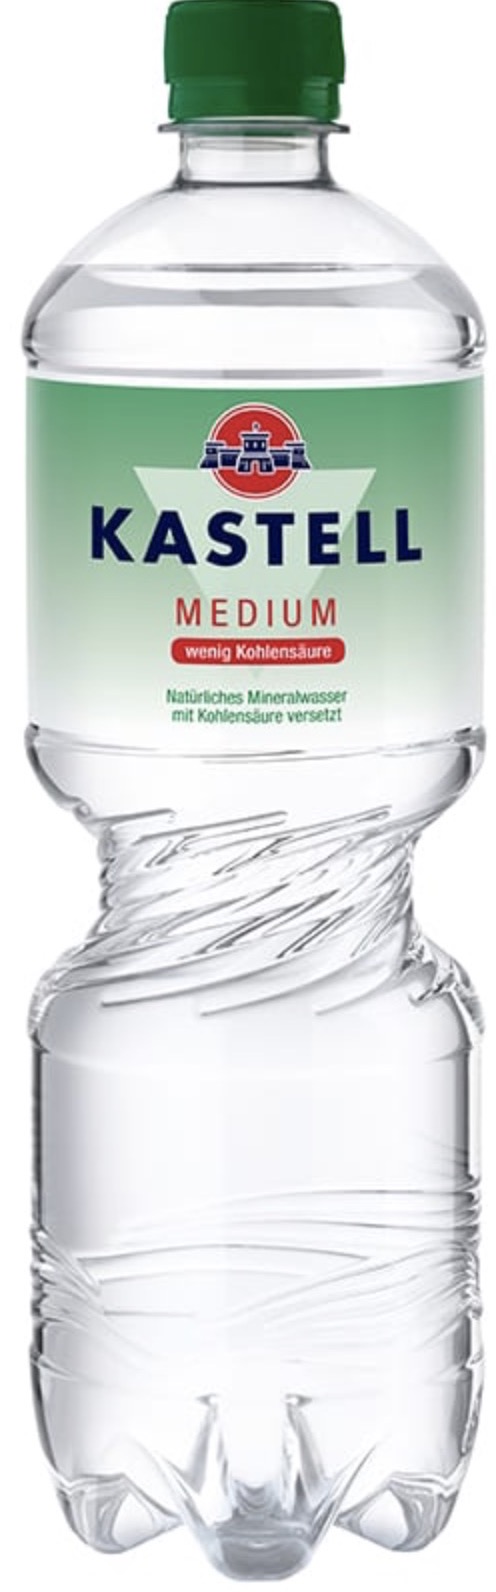 Kastell Mineralwasser Medium 1,0L EINWEG